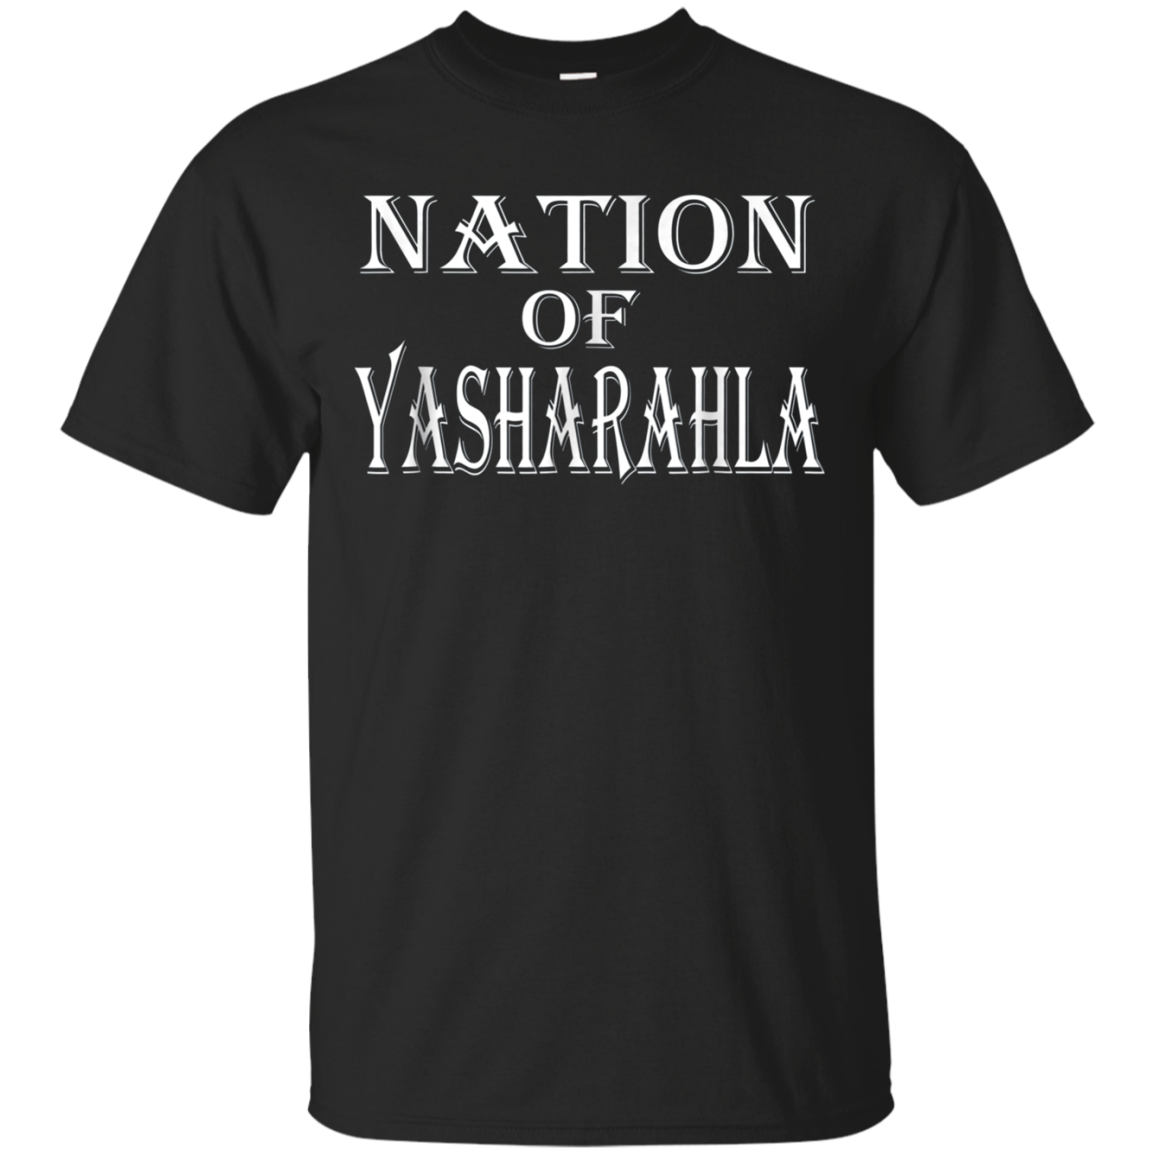 Hebrew Israelite Clothing Nation Of Yasharahla T-shirt